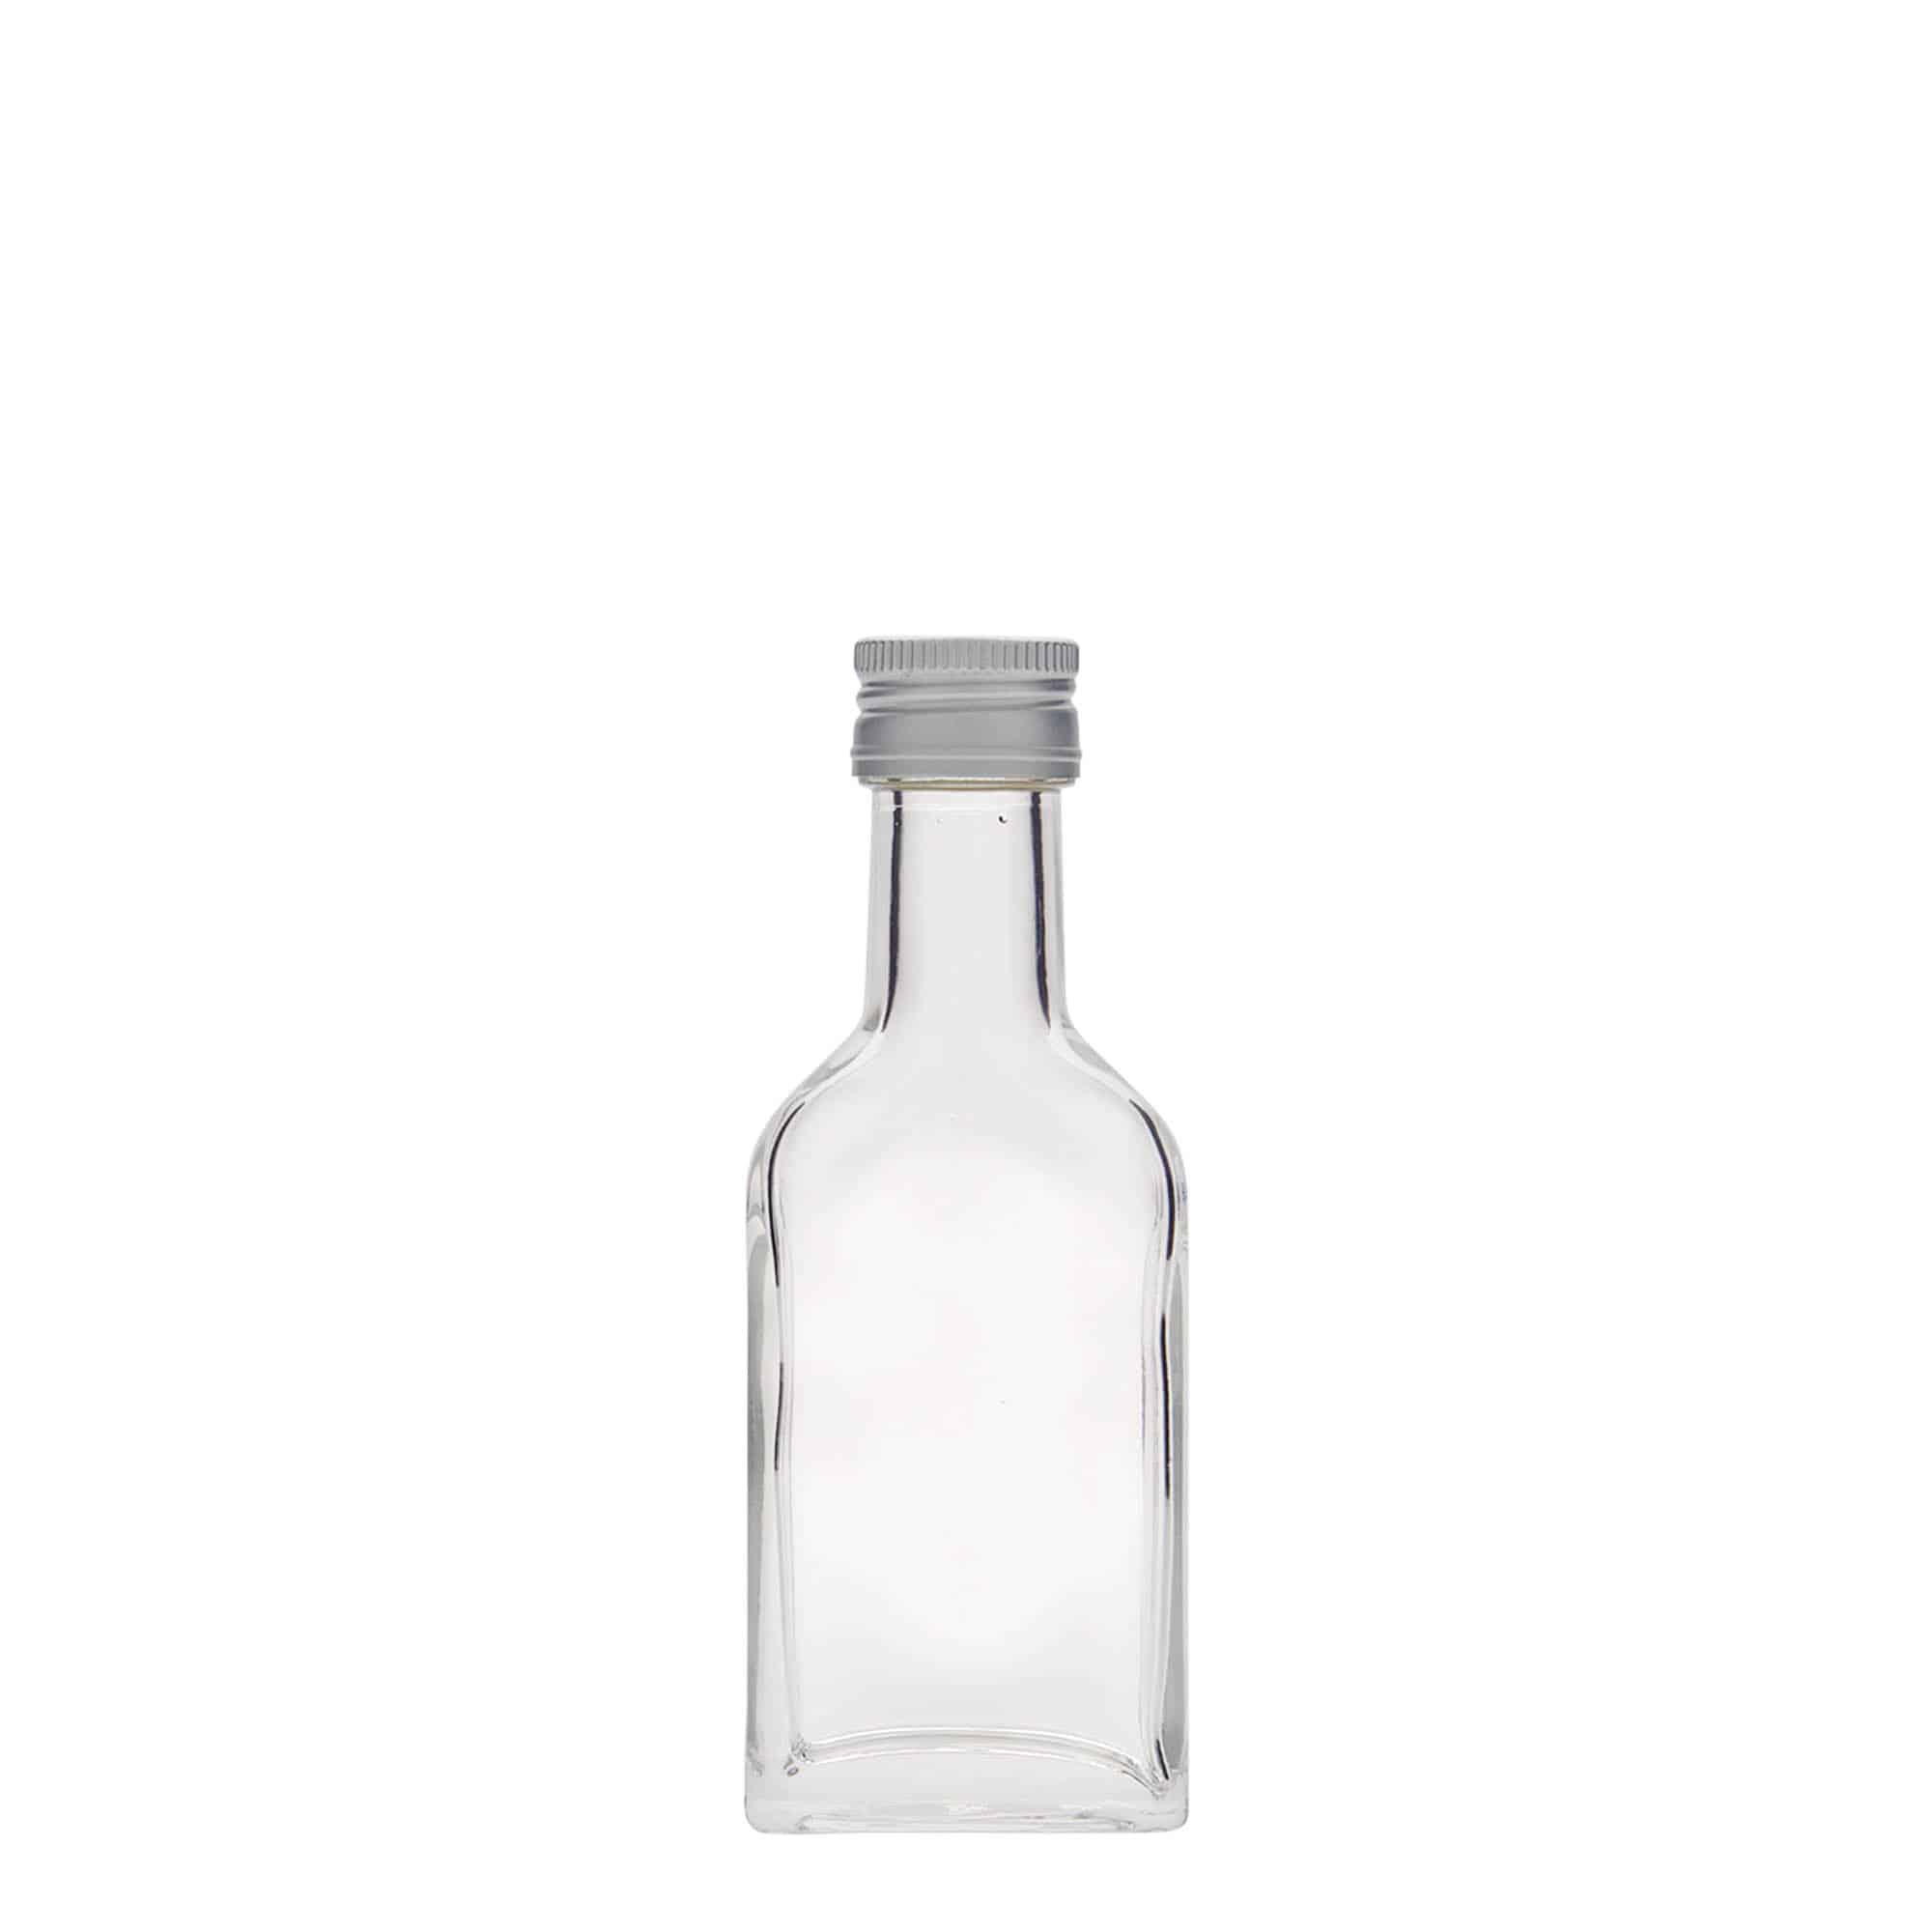 40 ml long neck pocket flask bottle, rectangular, glass, closure: PP 22